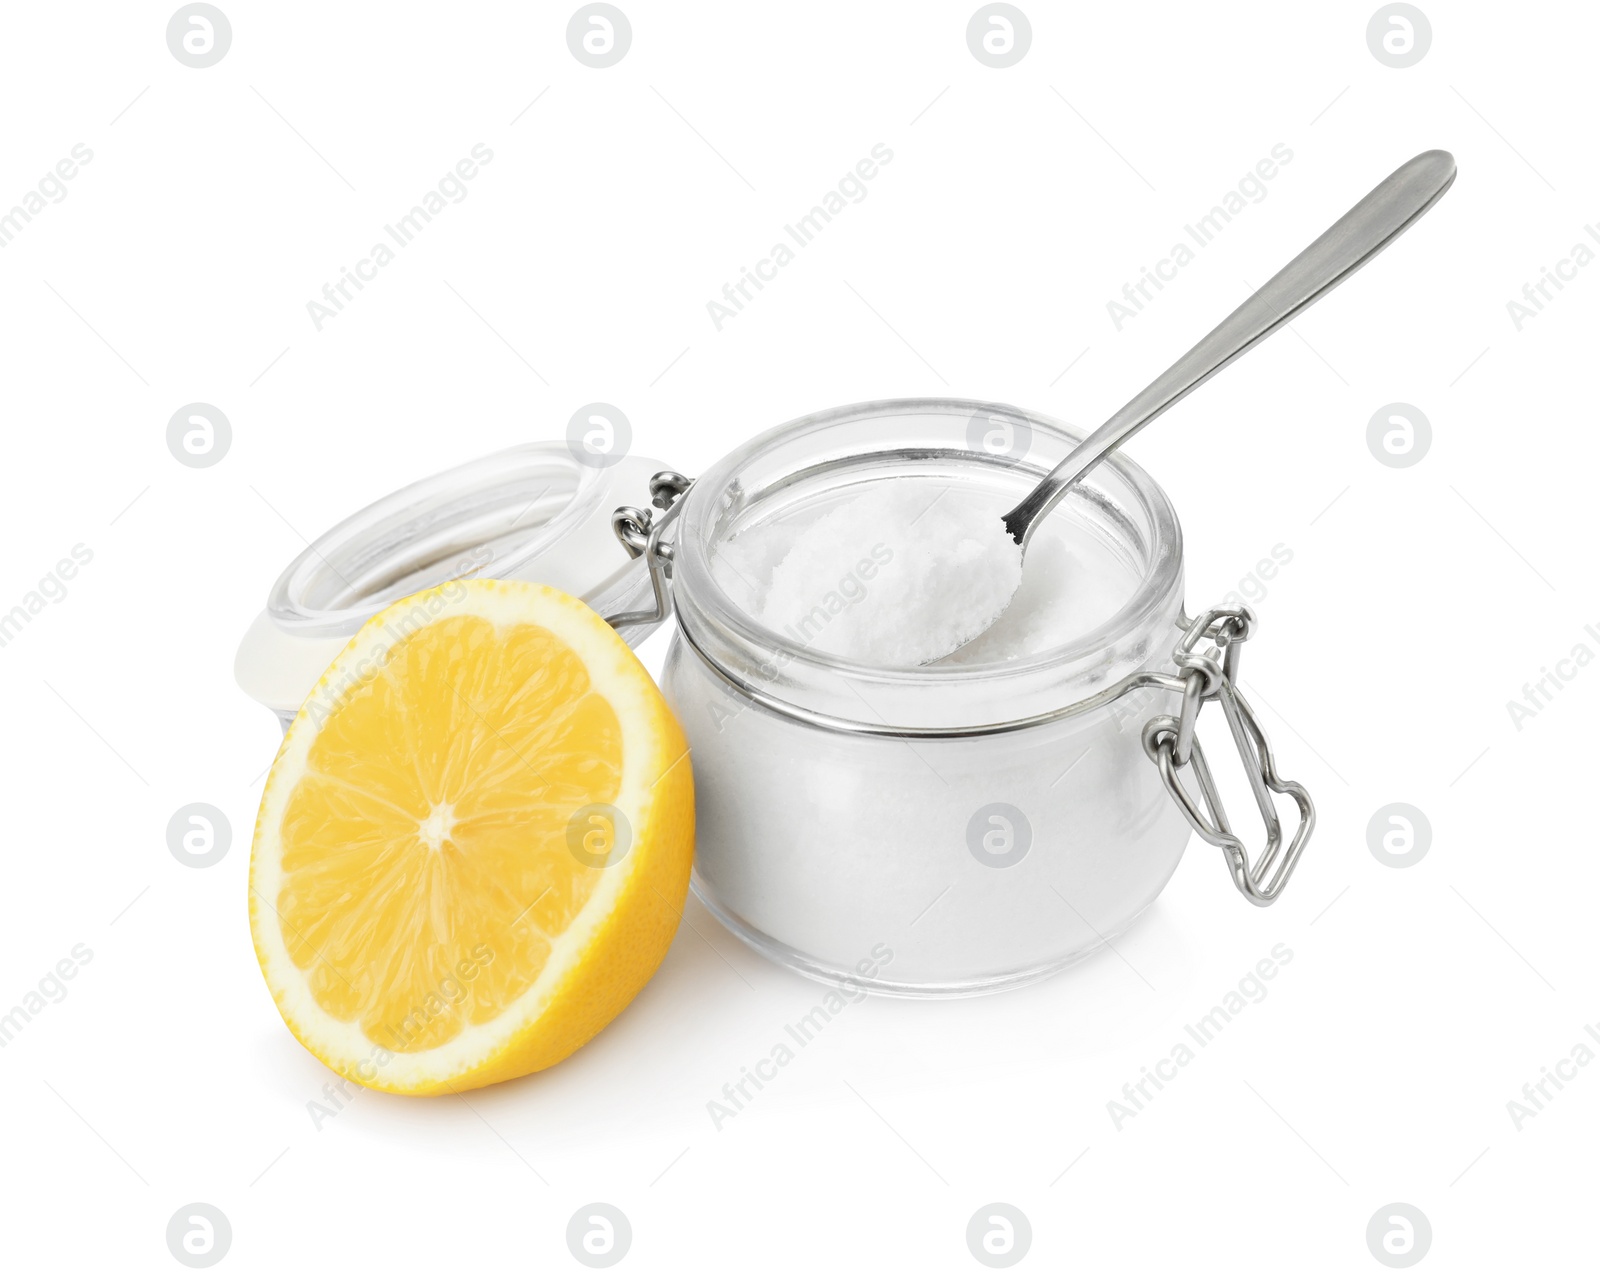 Photo of Baking soda and lemon on white background